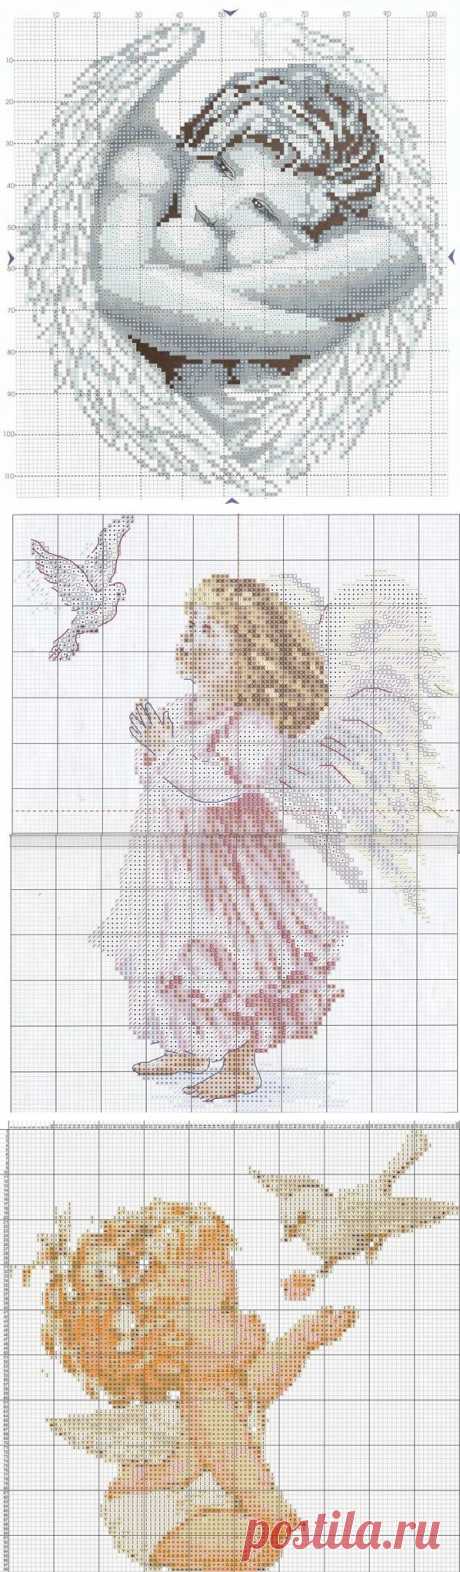 Ангелочки - 19 схем для вышивки крестом.